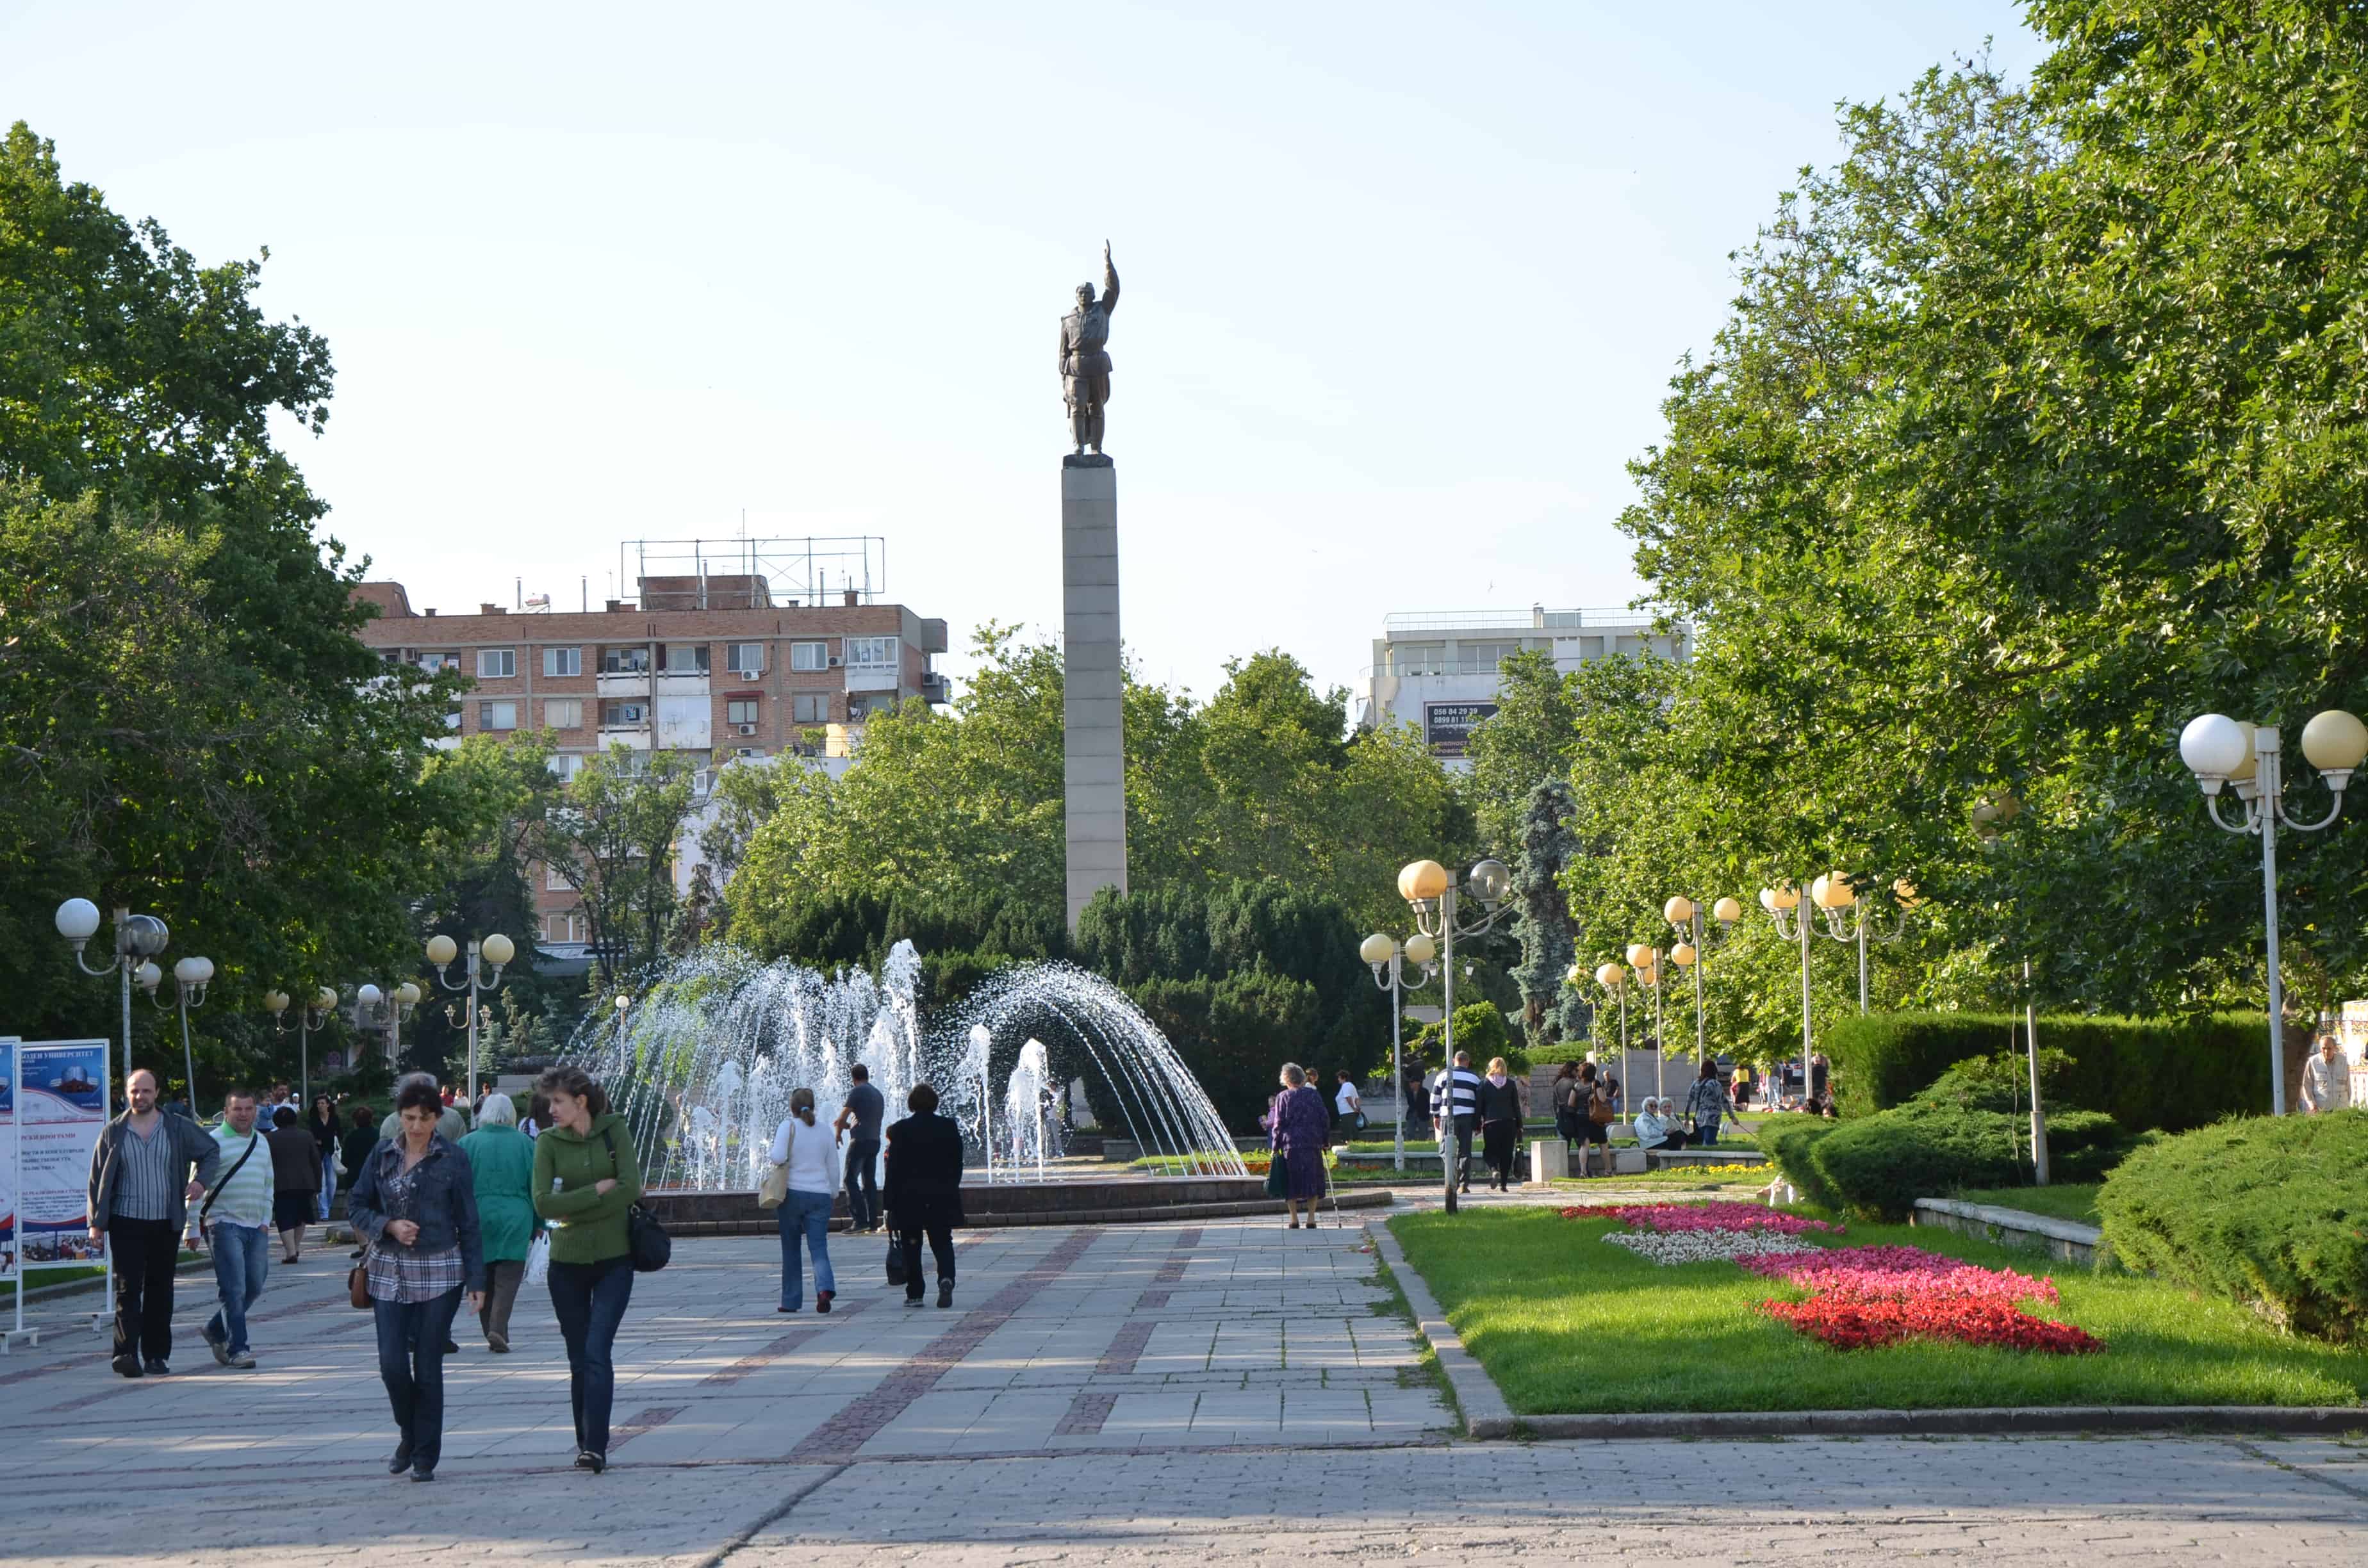 Troykata Square in Burgas, Bulgaria